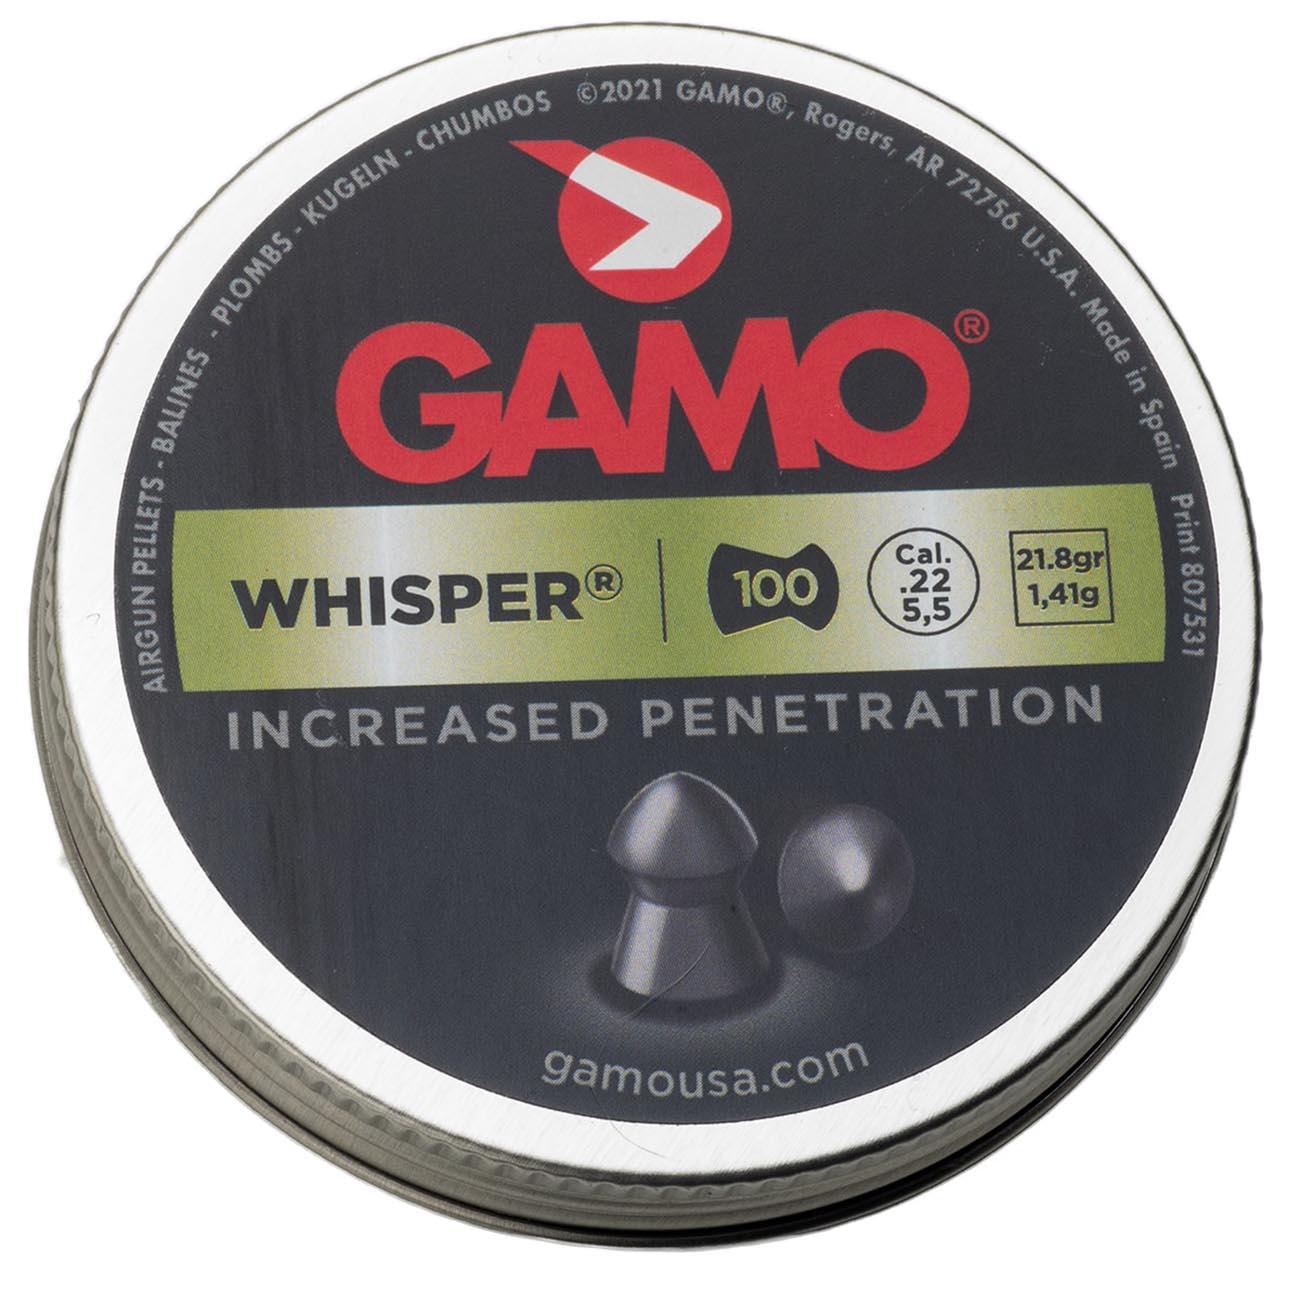 Gamo .22cal "whisper Pellet" Pellets - 21.8 Grain (100 Count)